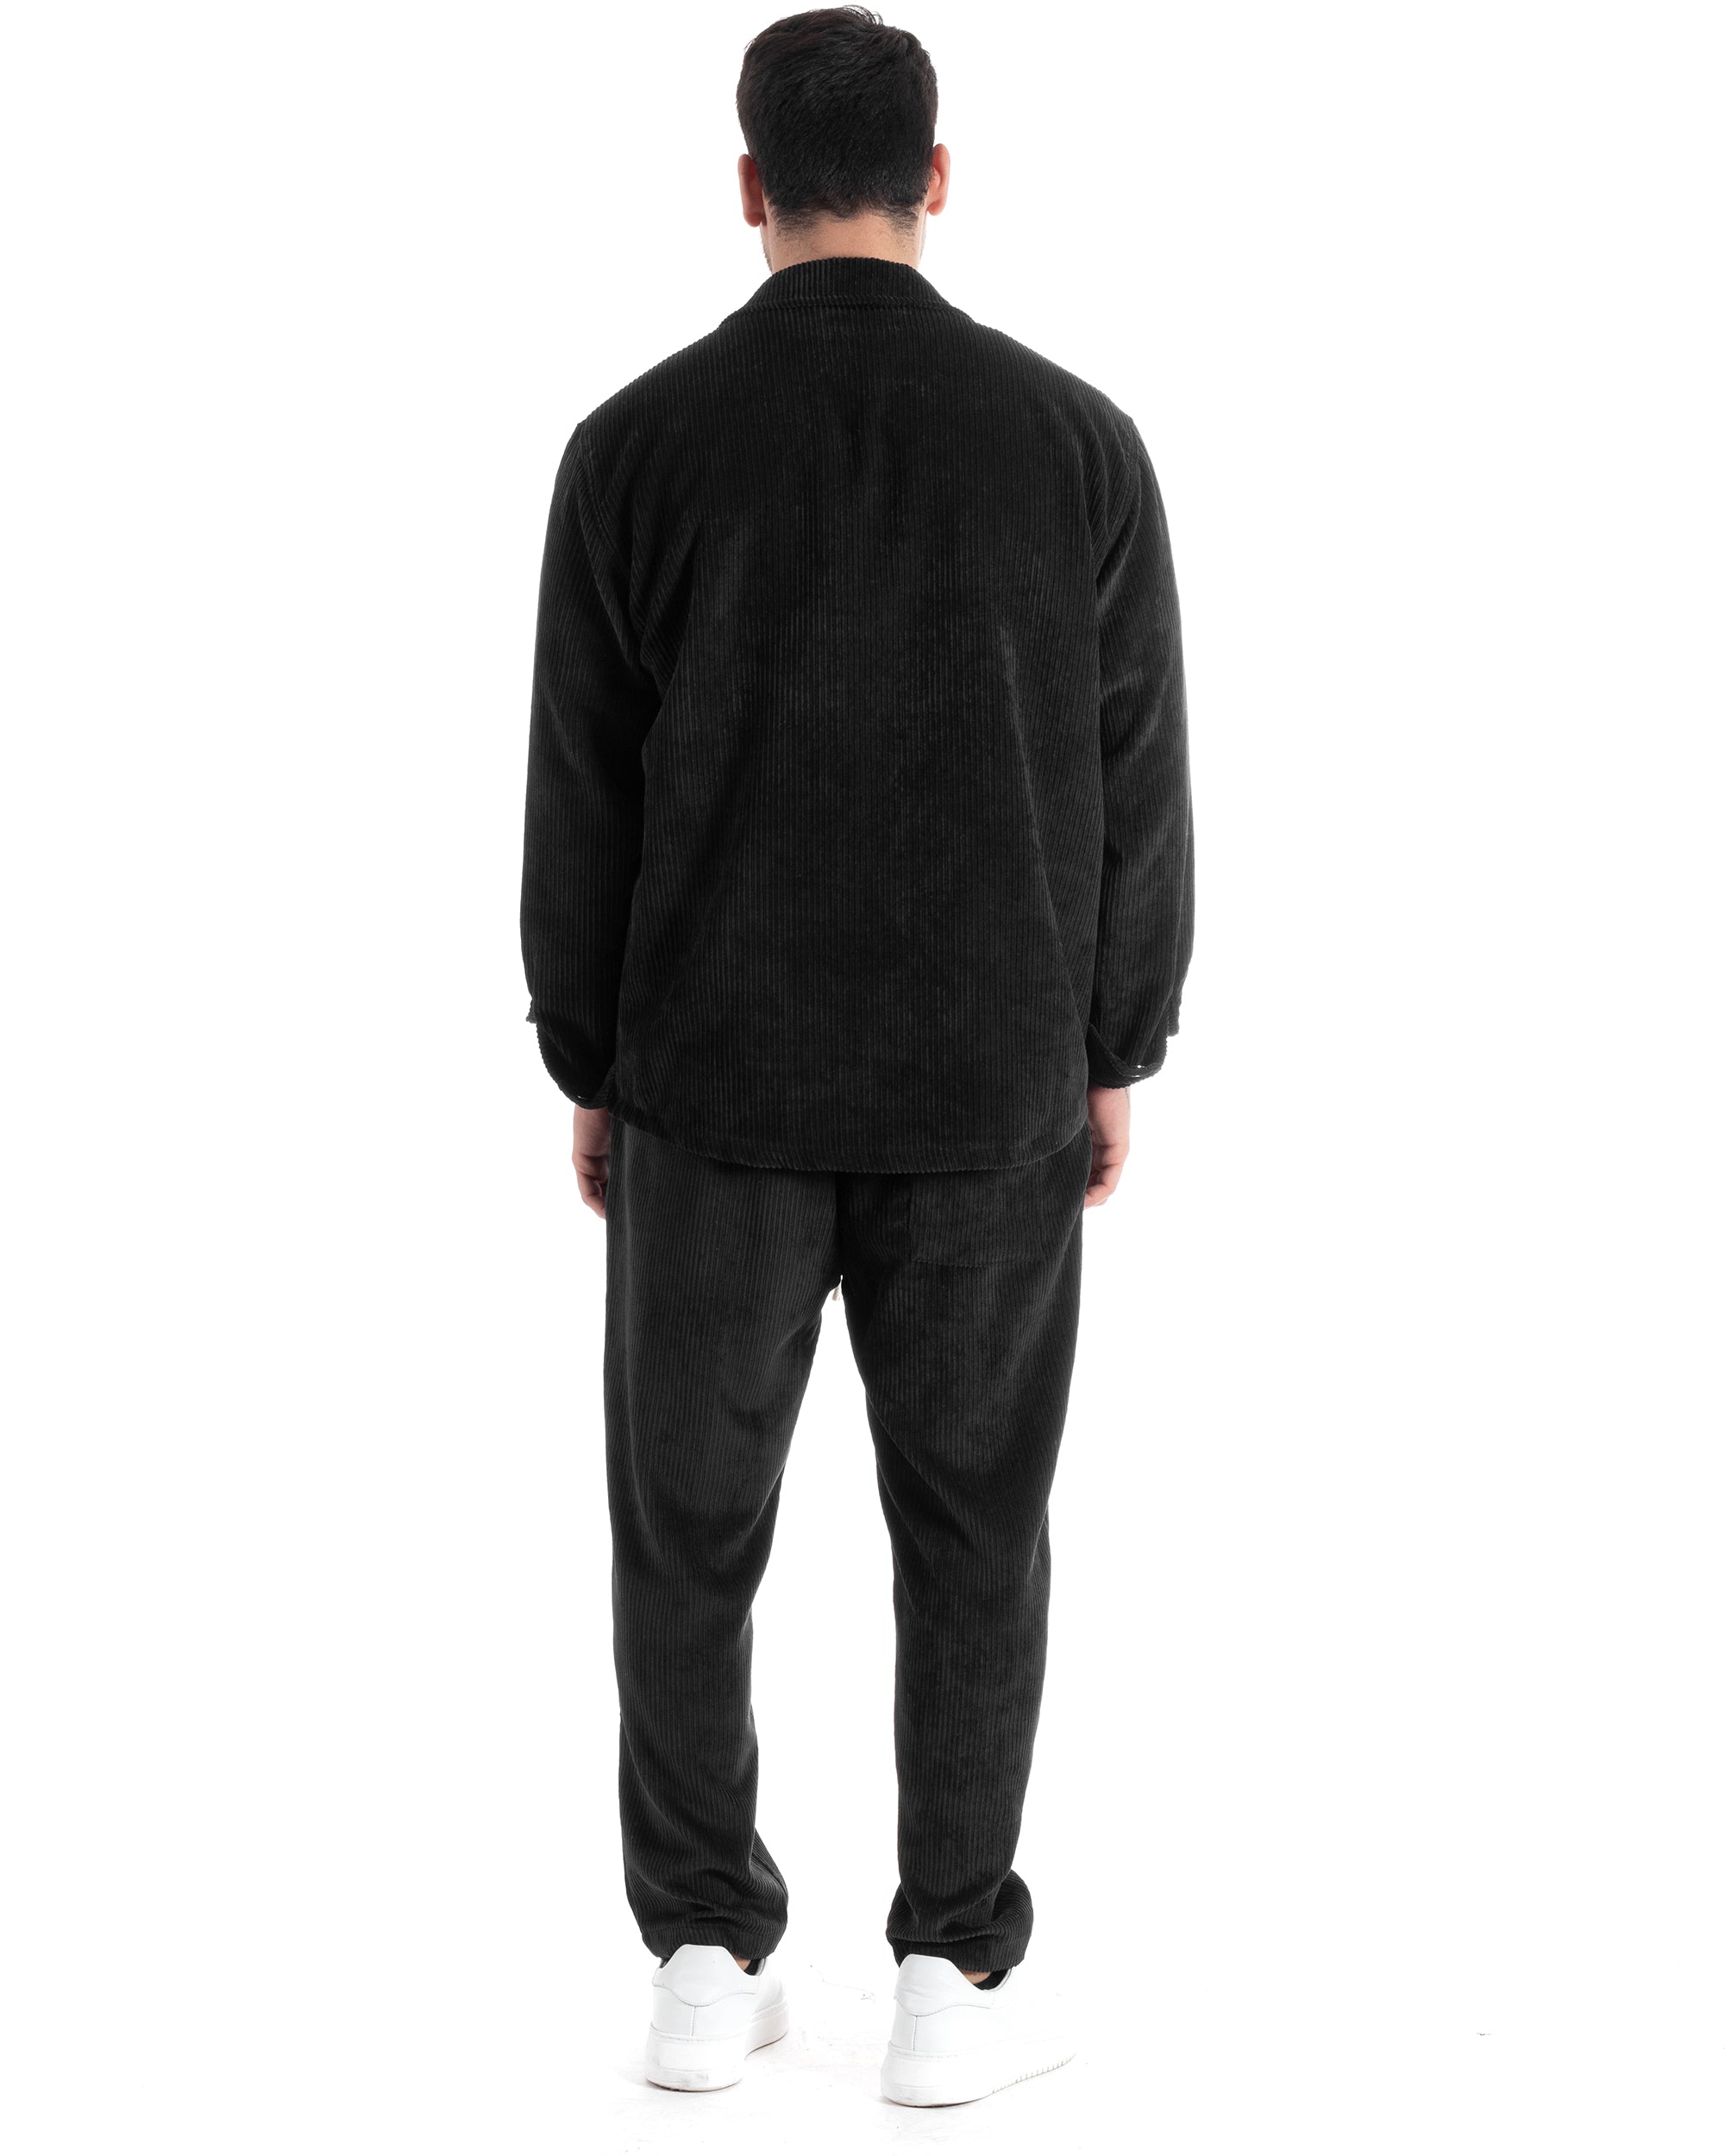 Completo Set Coordinato Uomo Velluto Costine Camicia Con Colletto Pantalaccio Outfit Nero GIOSAL-OU2436A